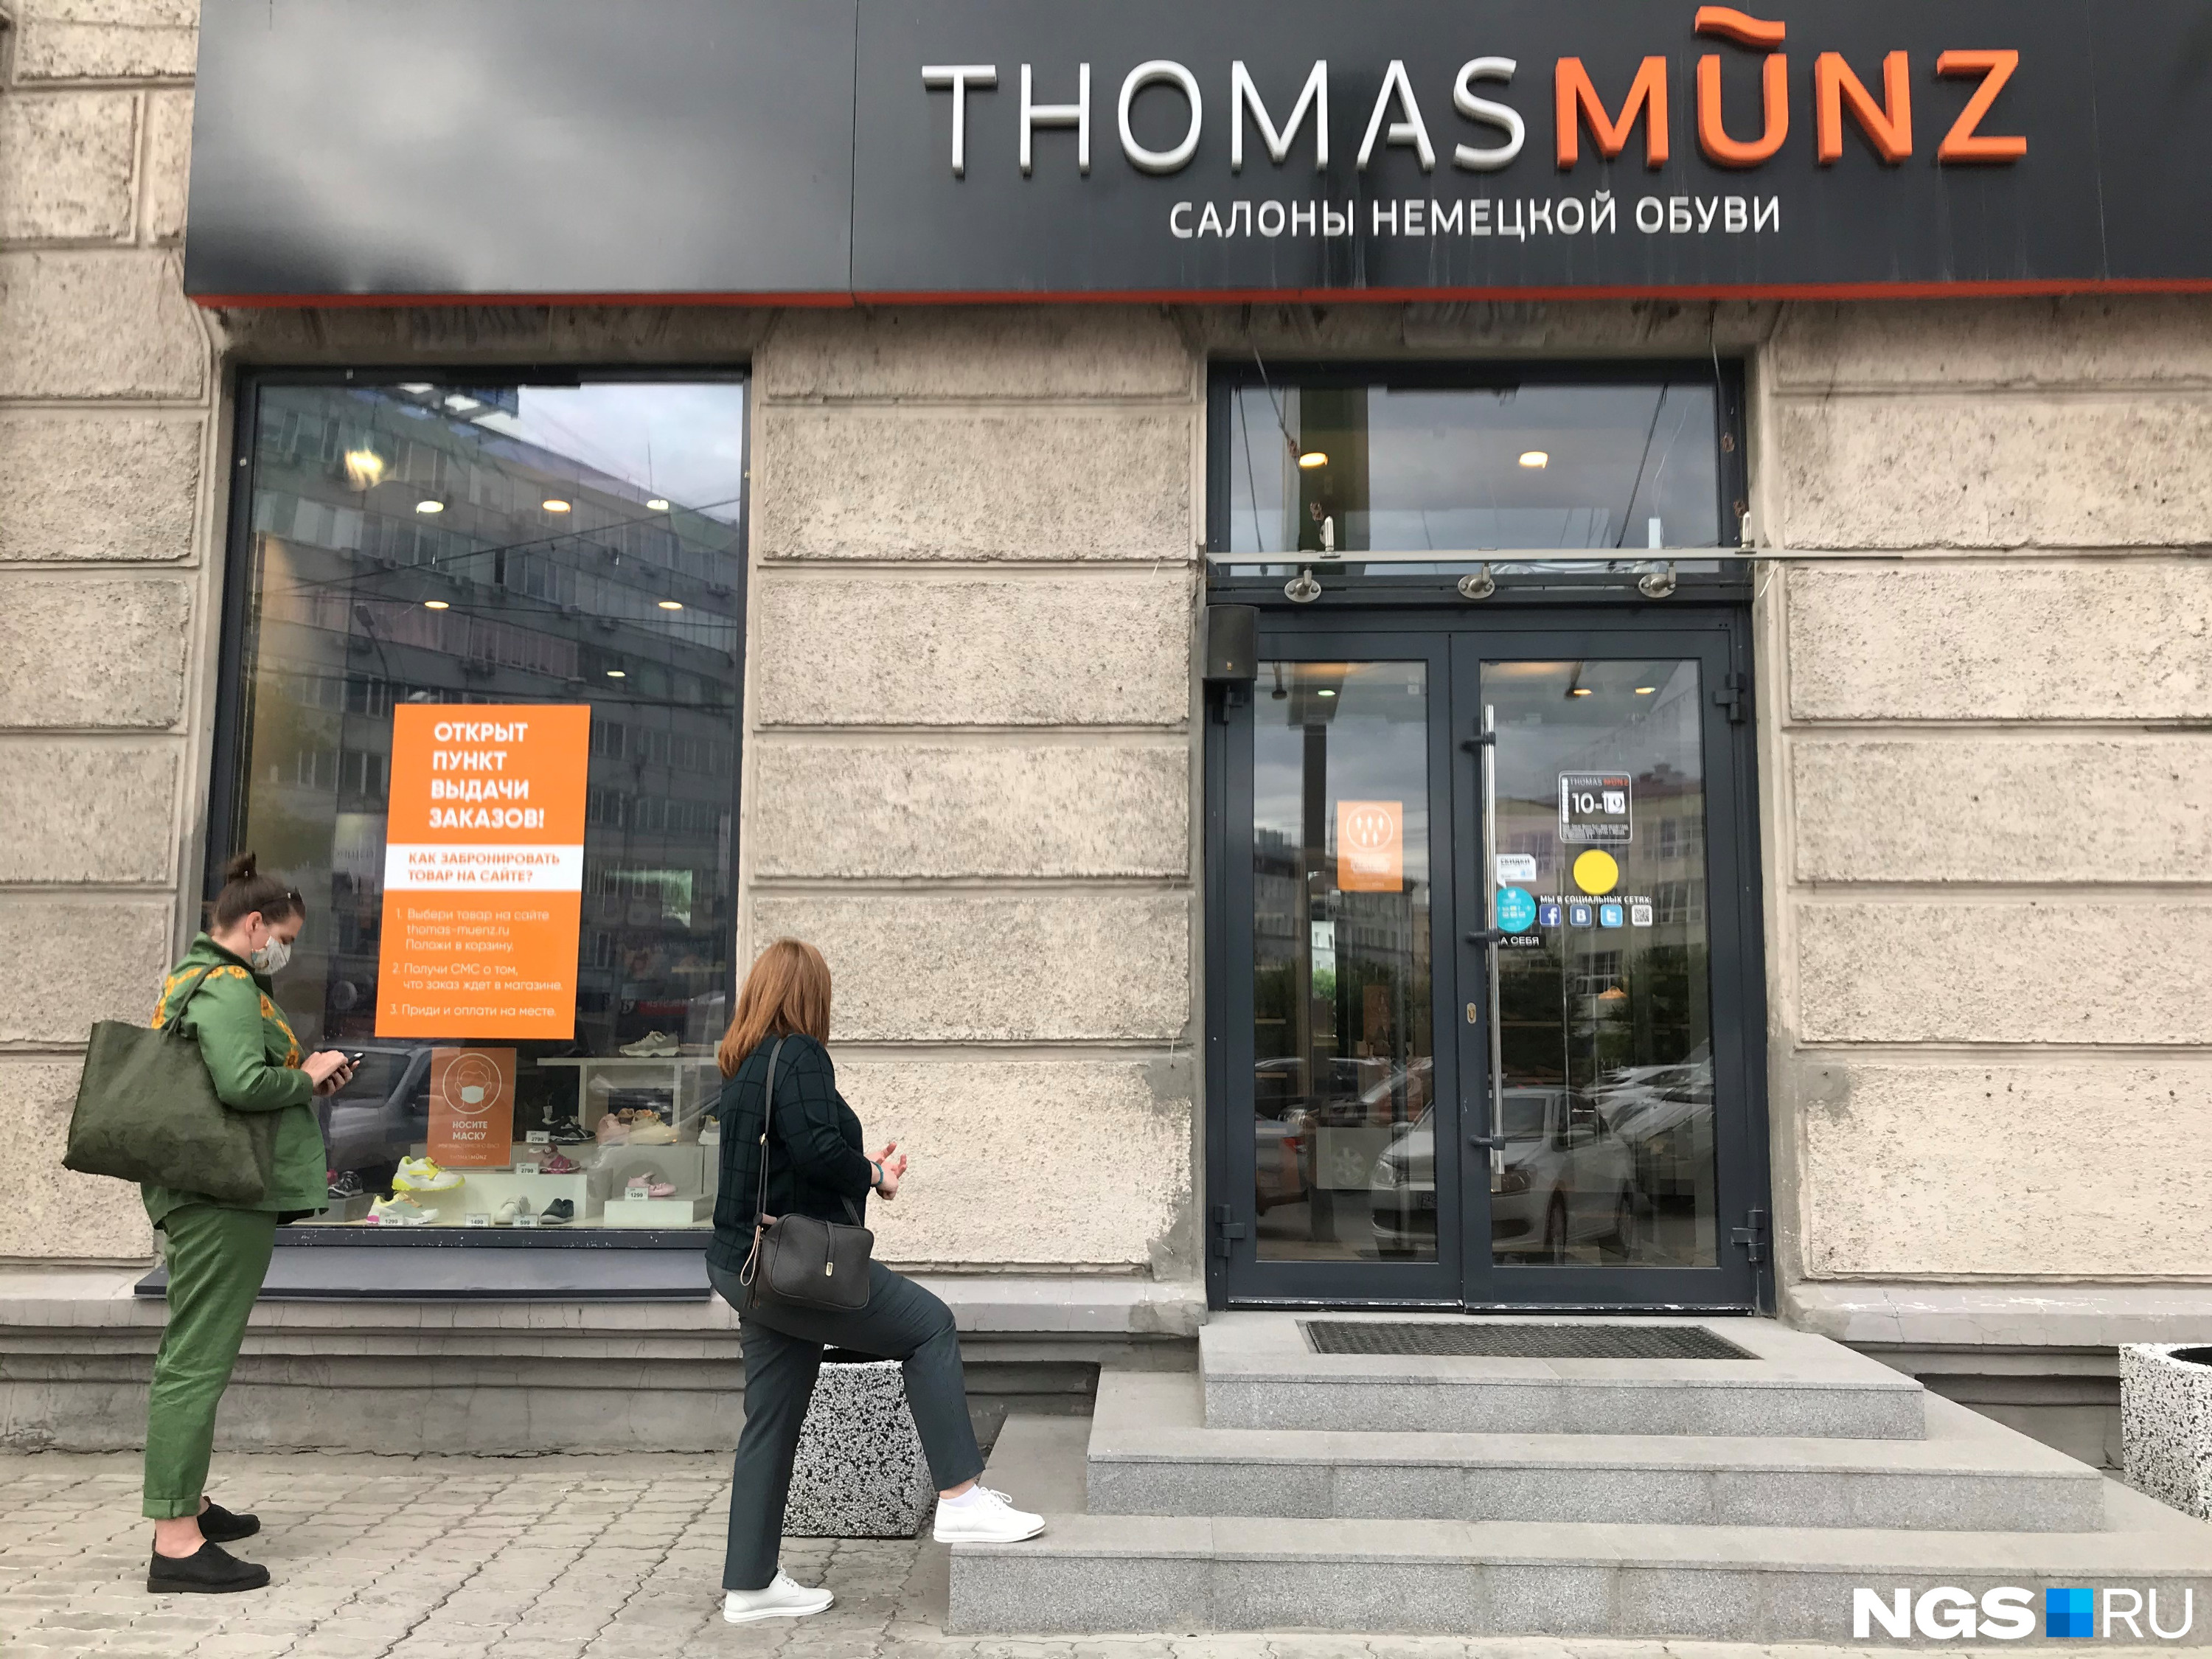 В последнюю неделю мая на площади Ленина открылся на выдачу онлайн-заказов и салон немецкой обуви Tomas Munz